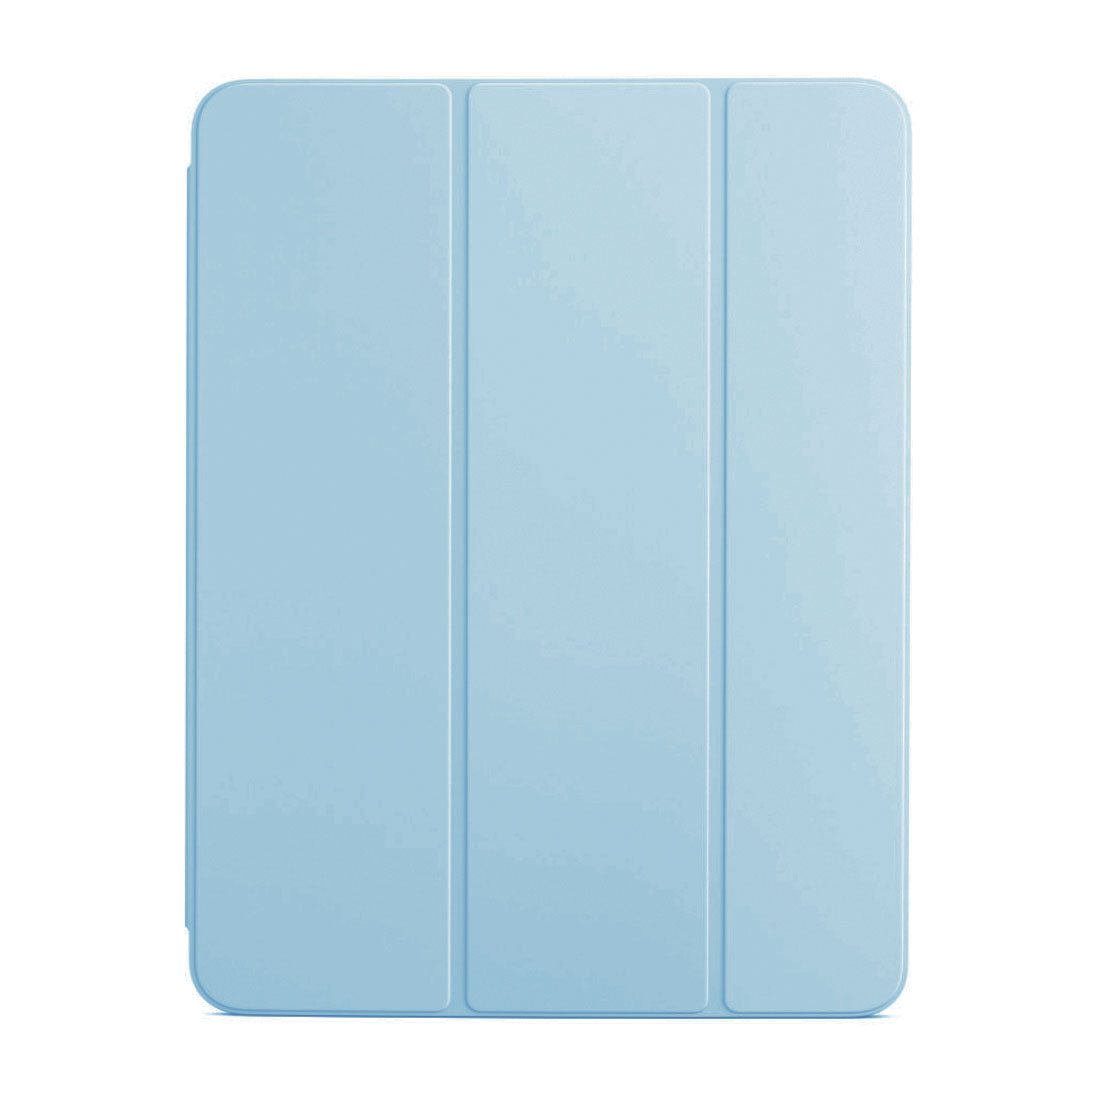 Devia puzdro Leather Case with Pencil Slot pre iPad 10.2